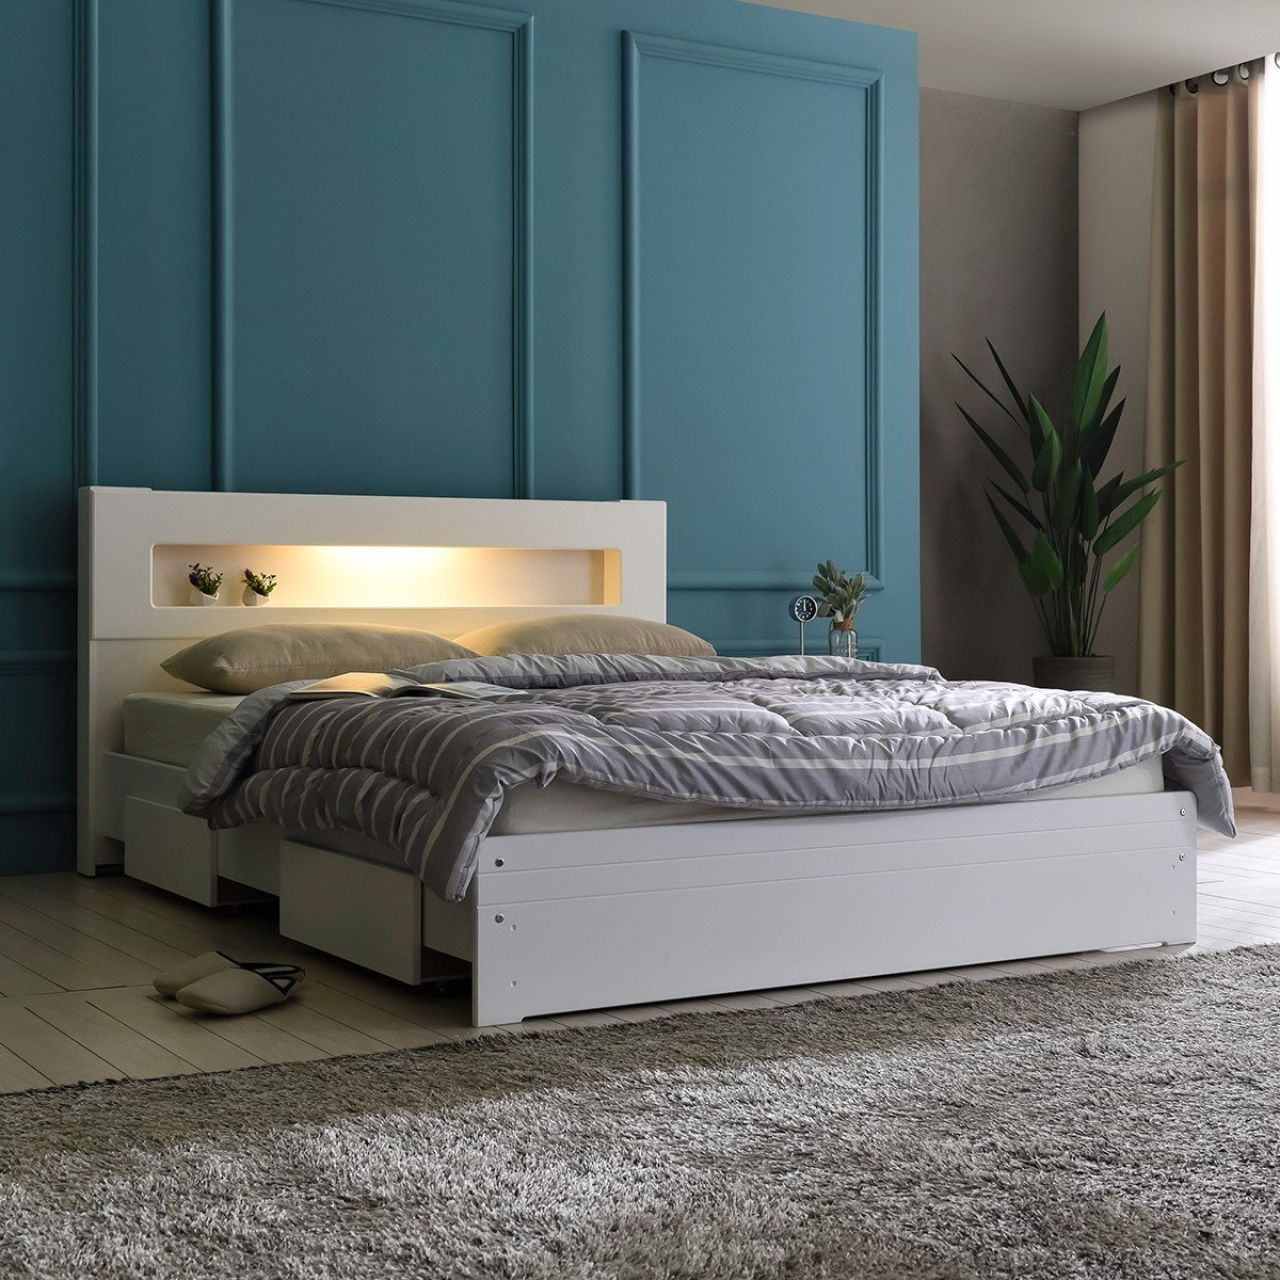 Giường ngủ có kệ trang trí tối giản dành cho căn hộ